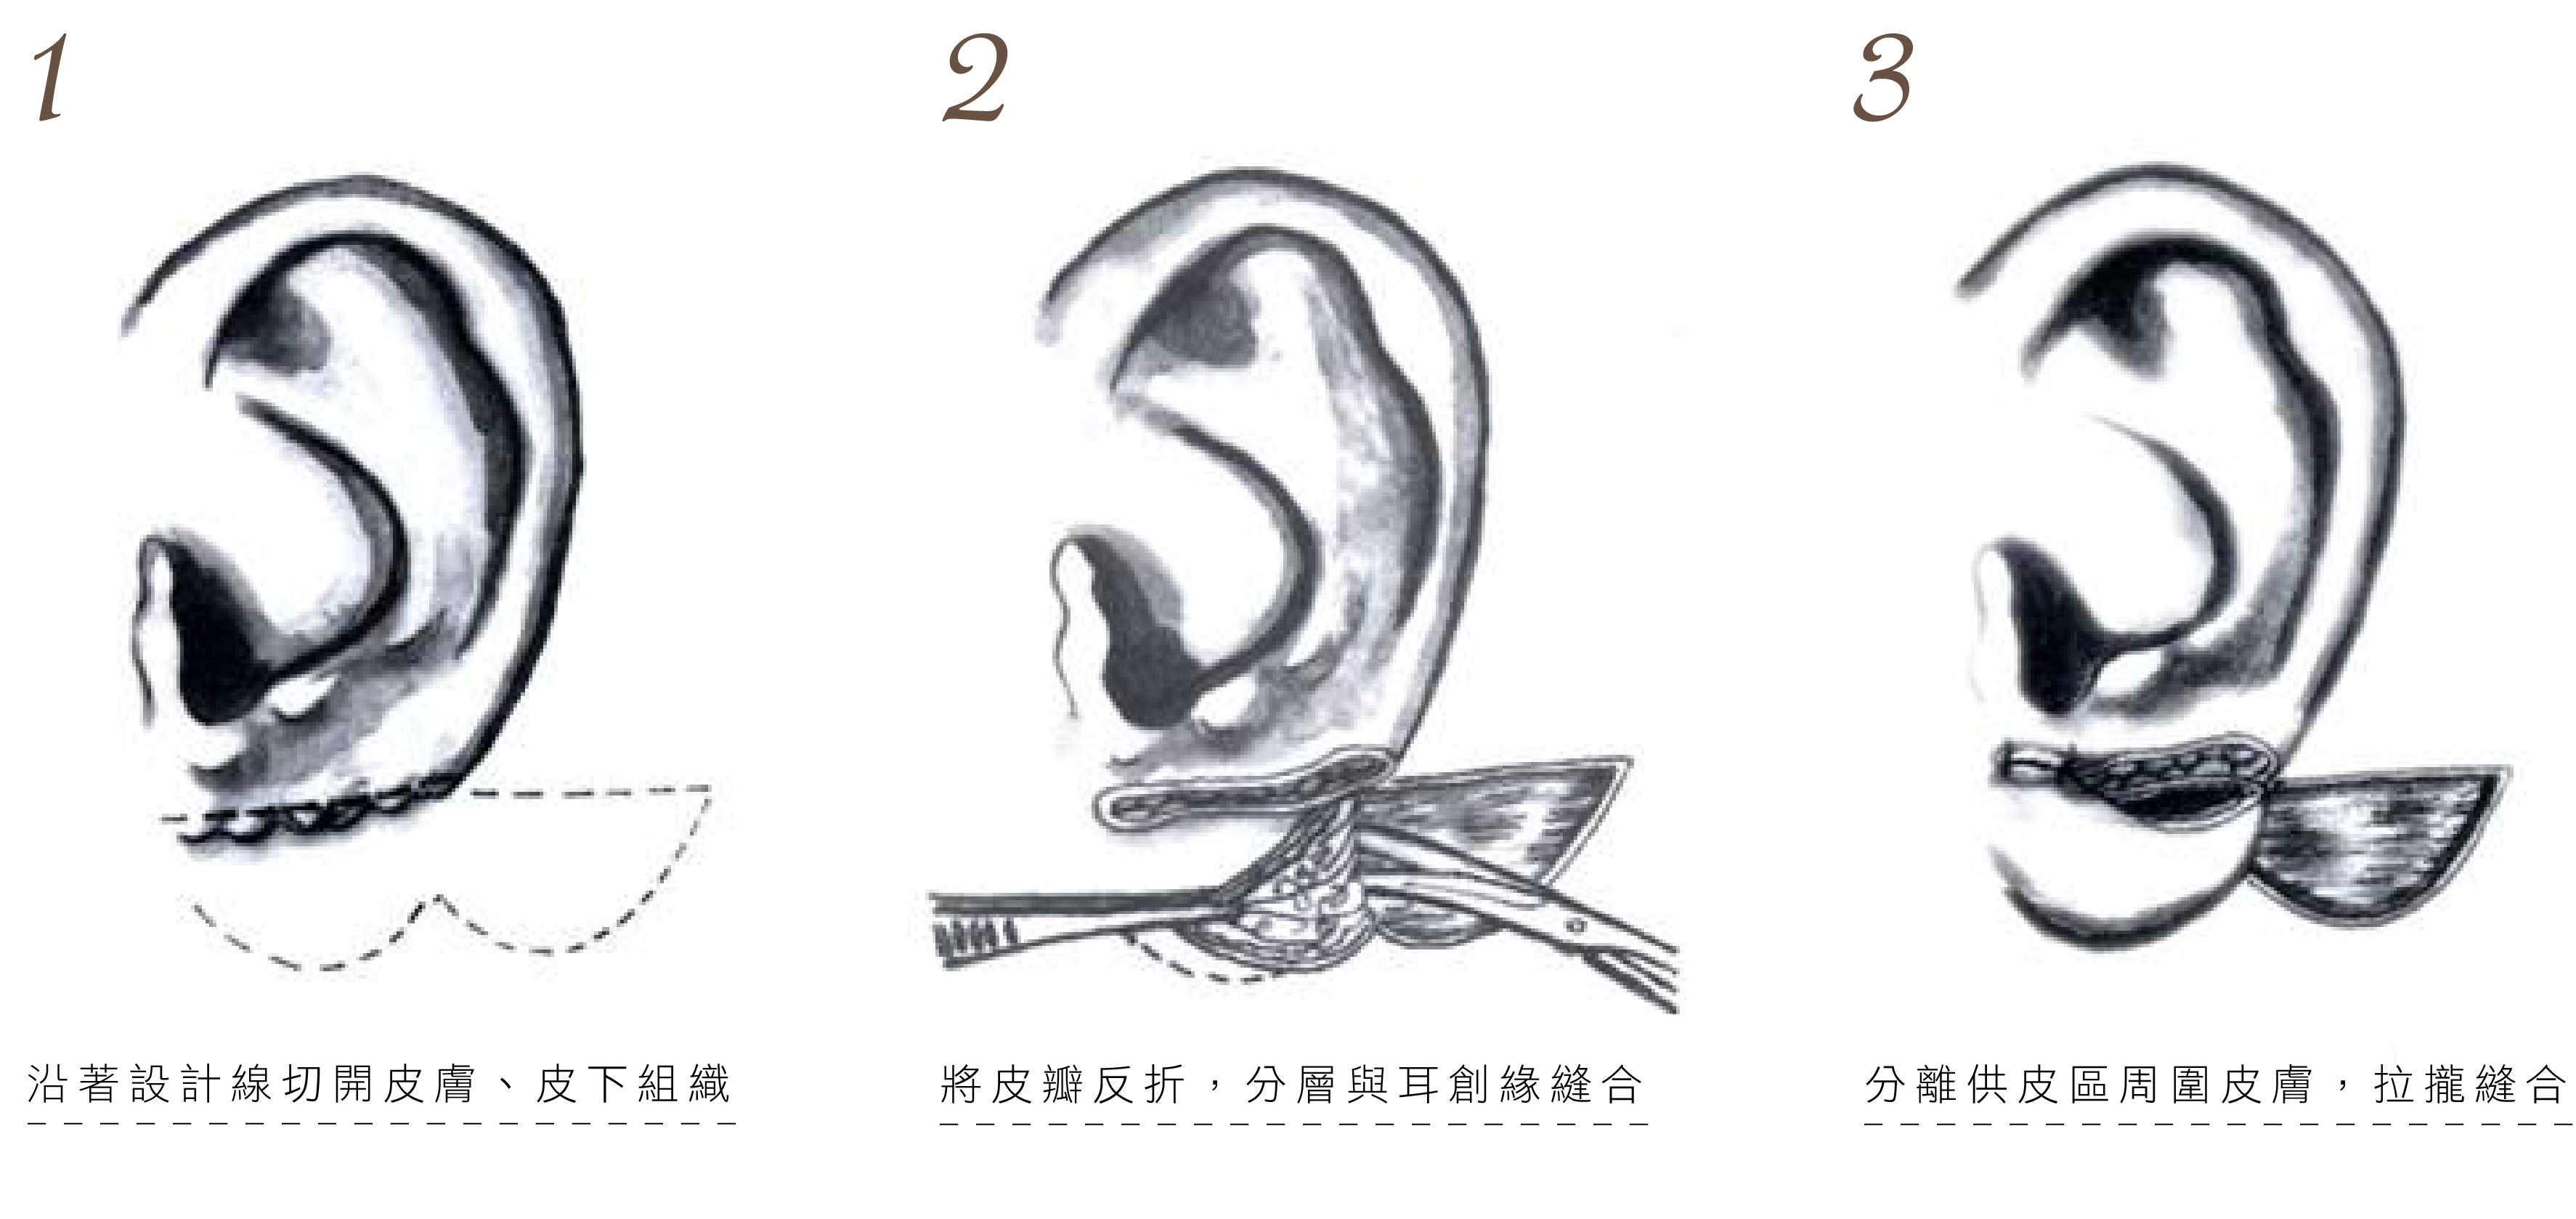 耳廓畸形图片及名称 - 哔哩哔哩